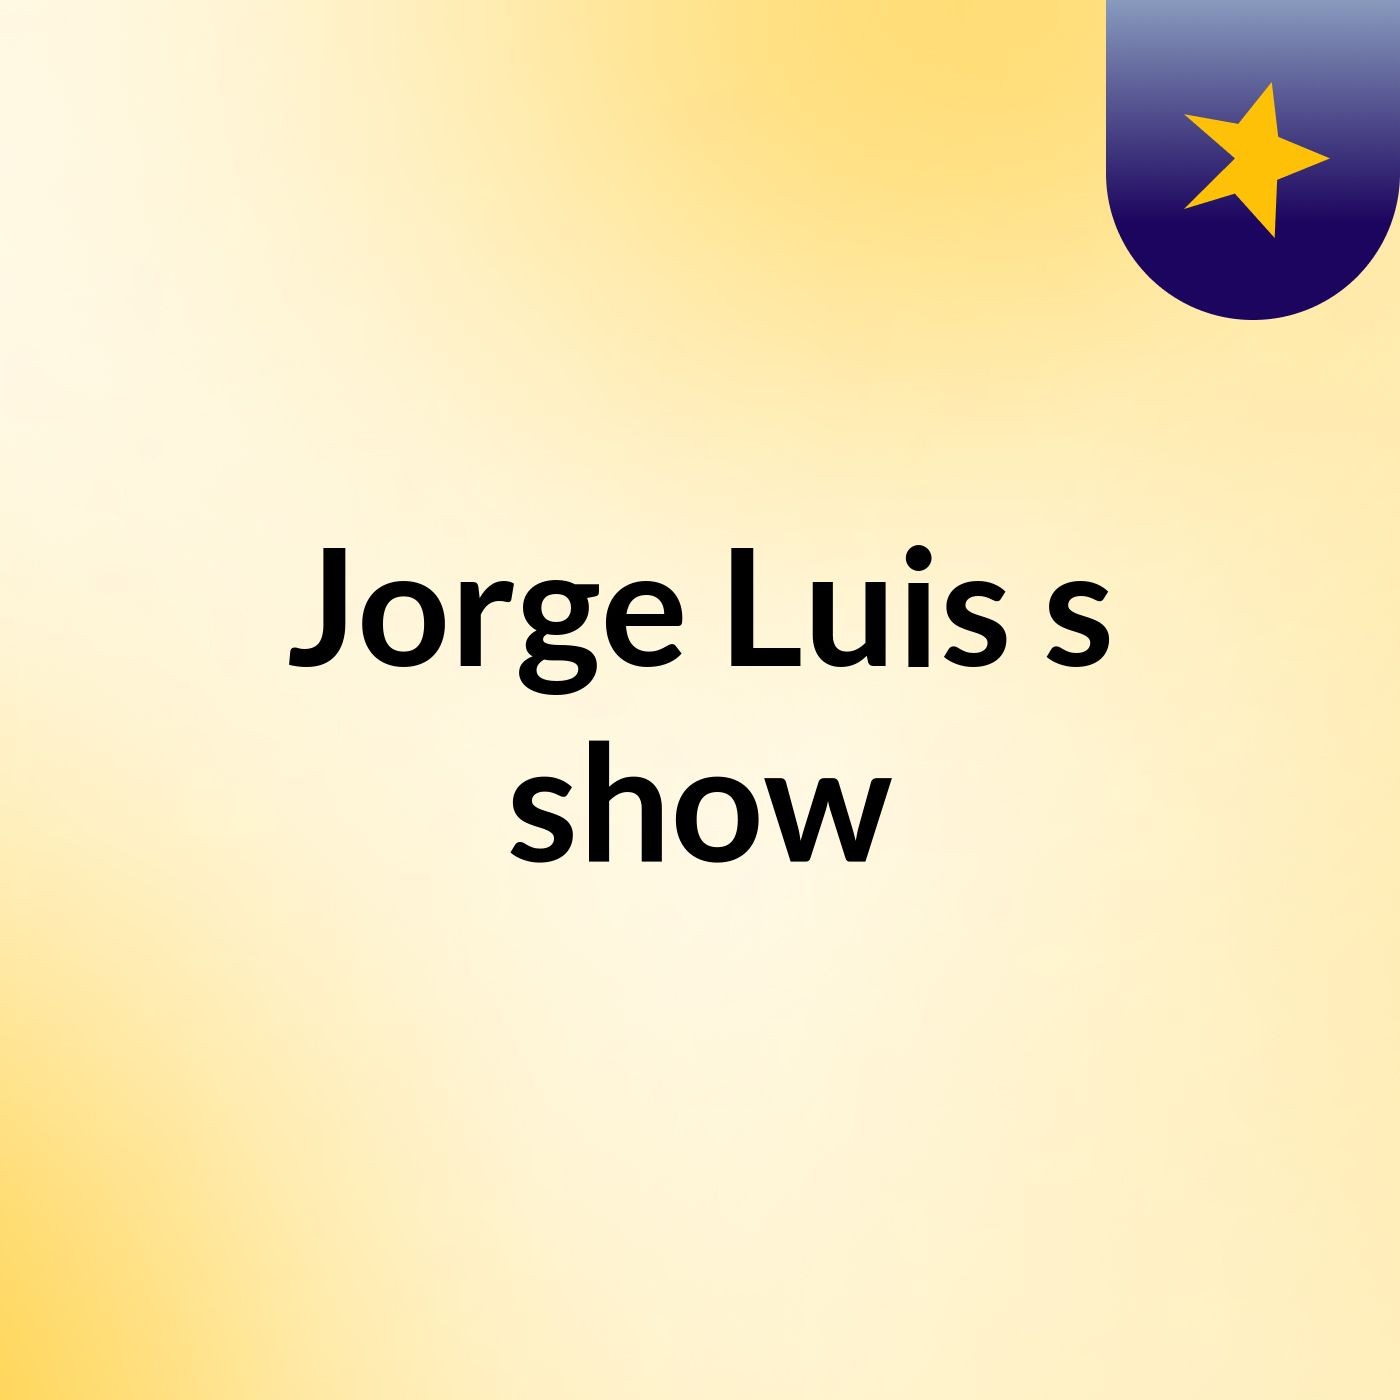 Jorge Luis's show